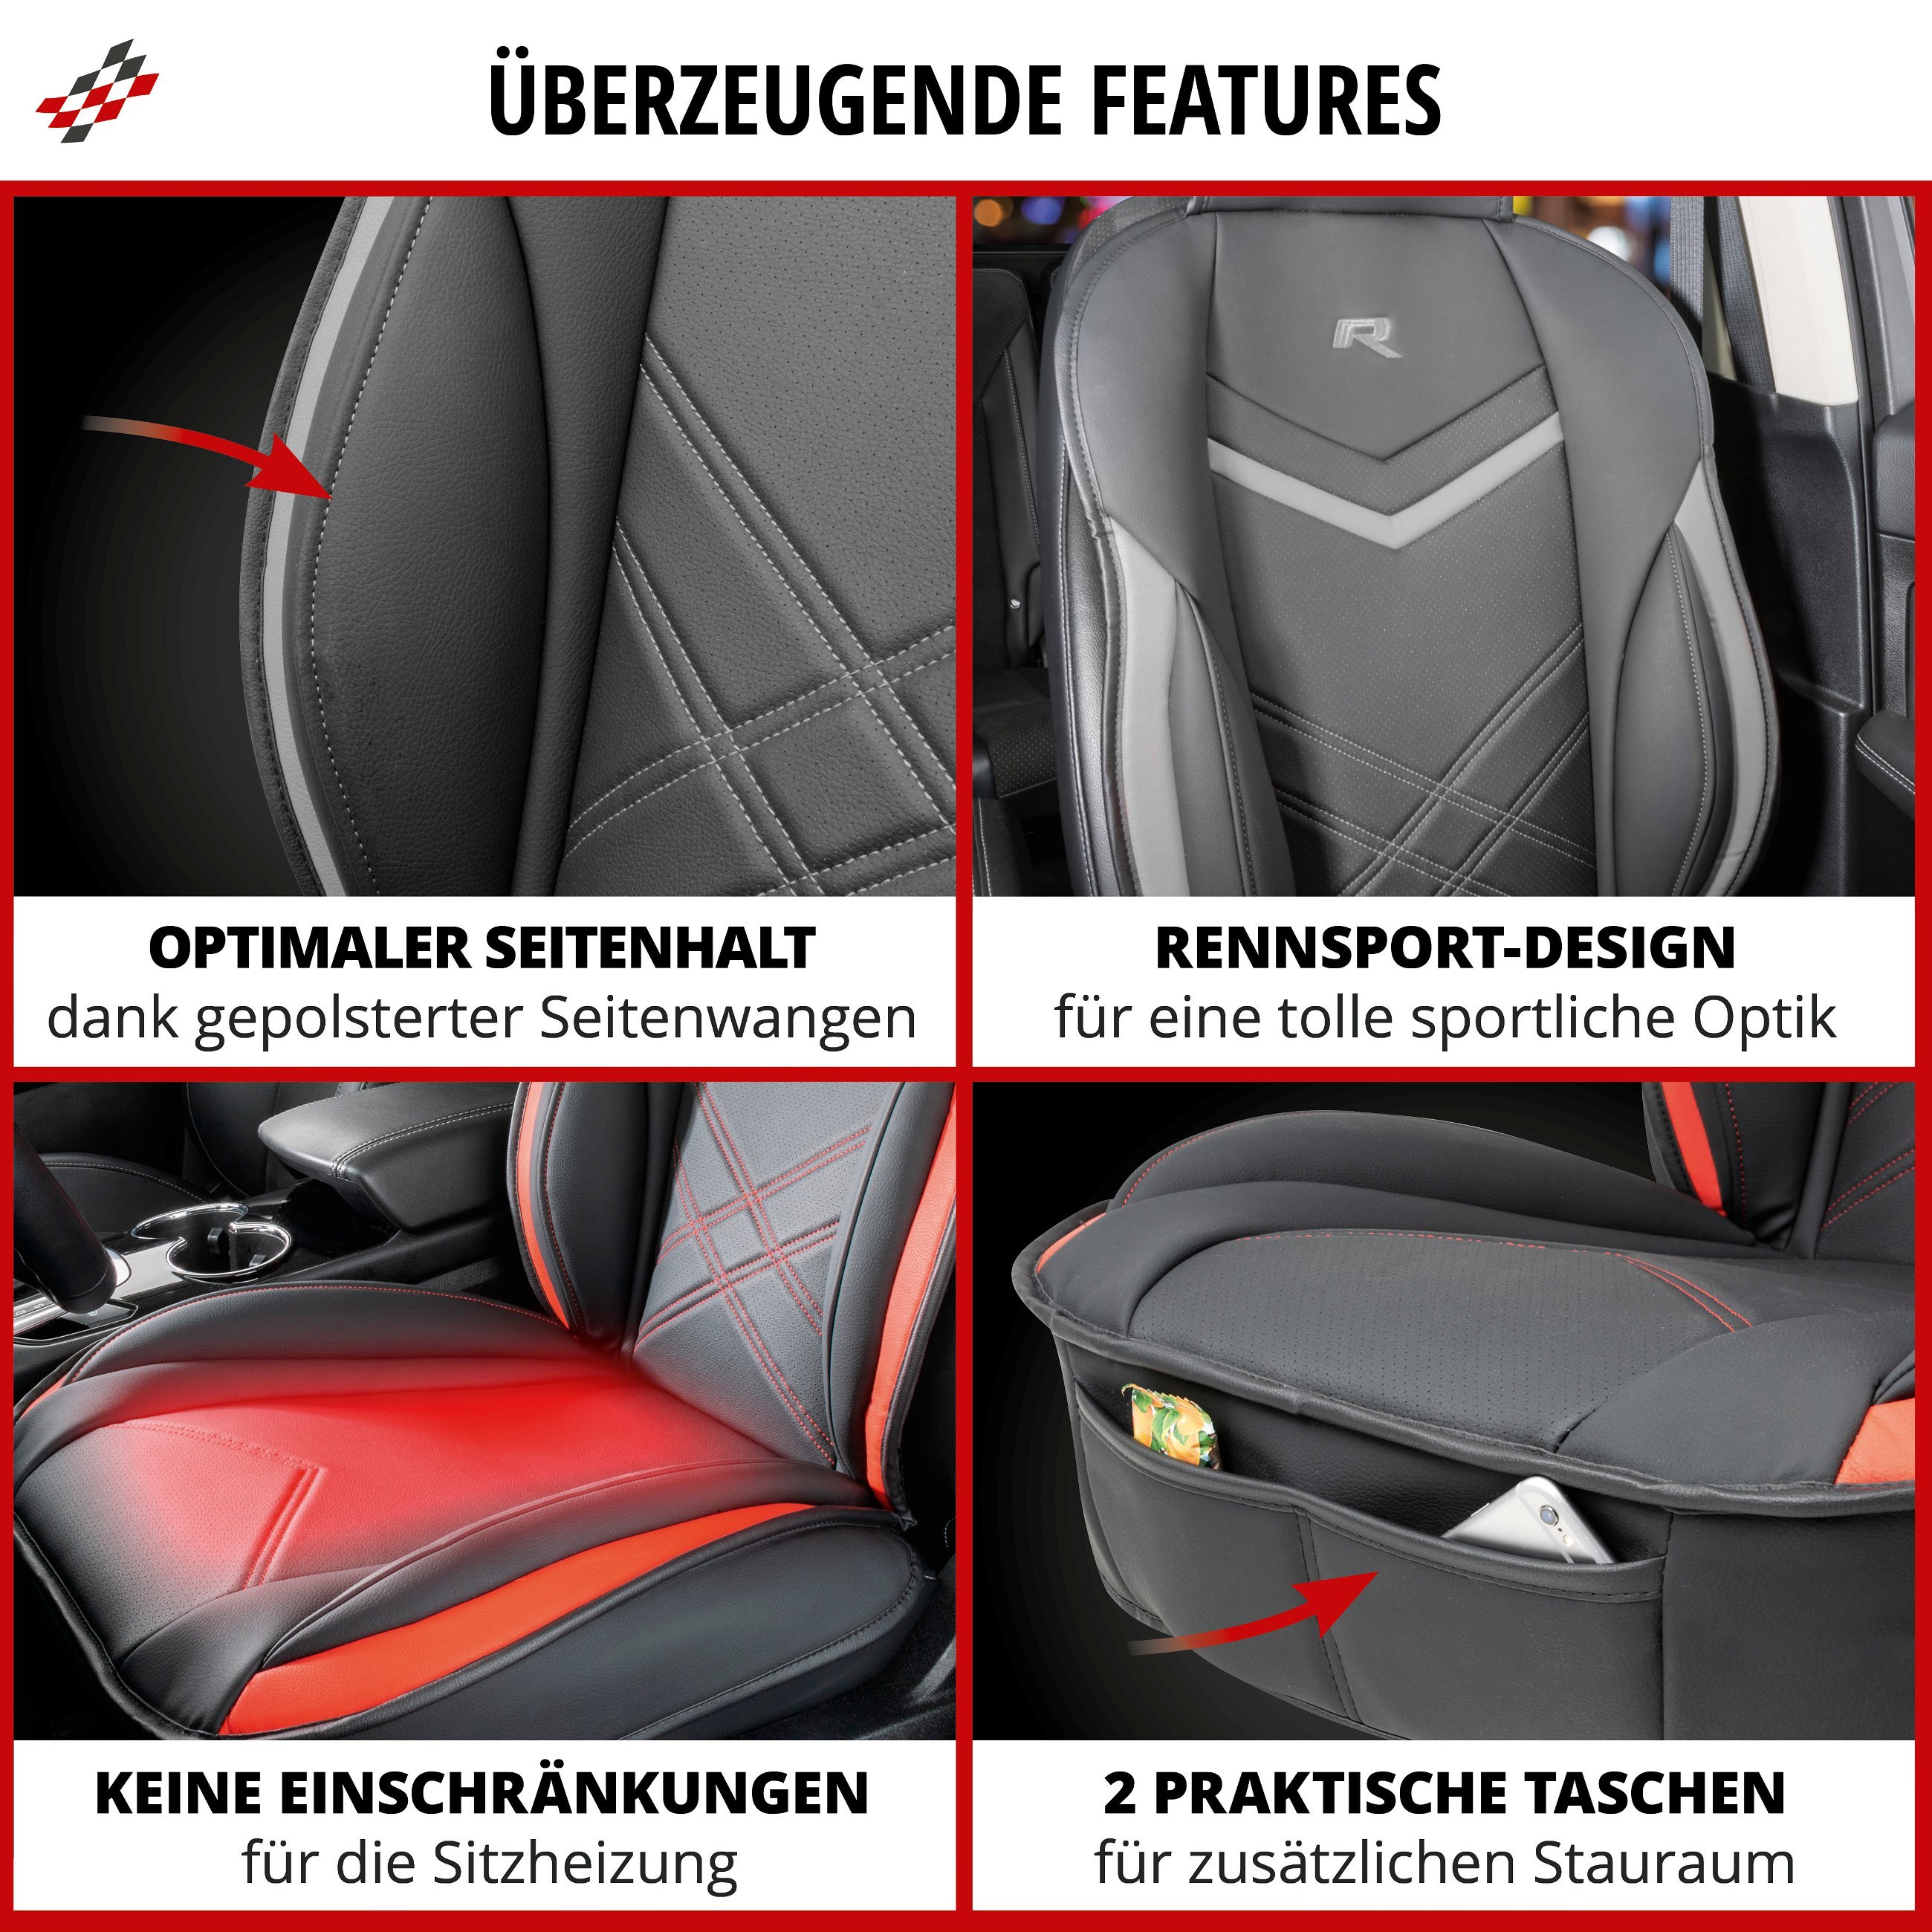 PKW Sitzauflage Rey, Auto-Sitzaufleger schwarz-rot